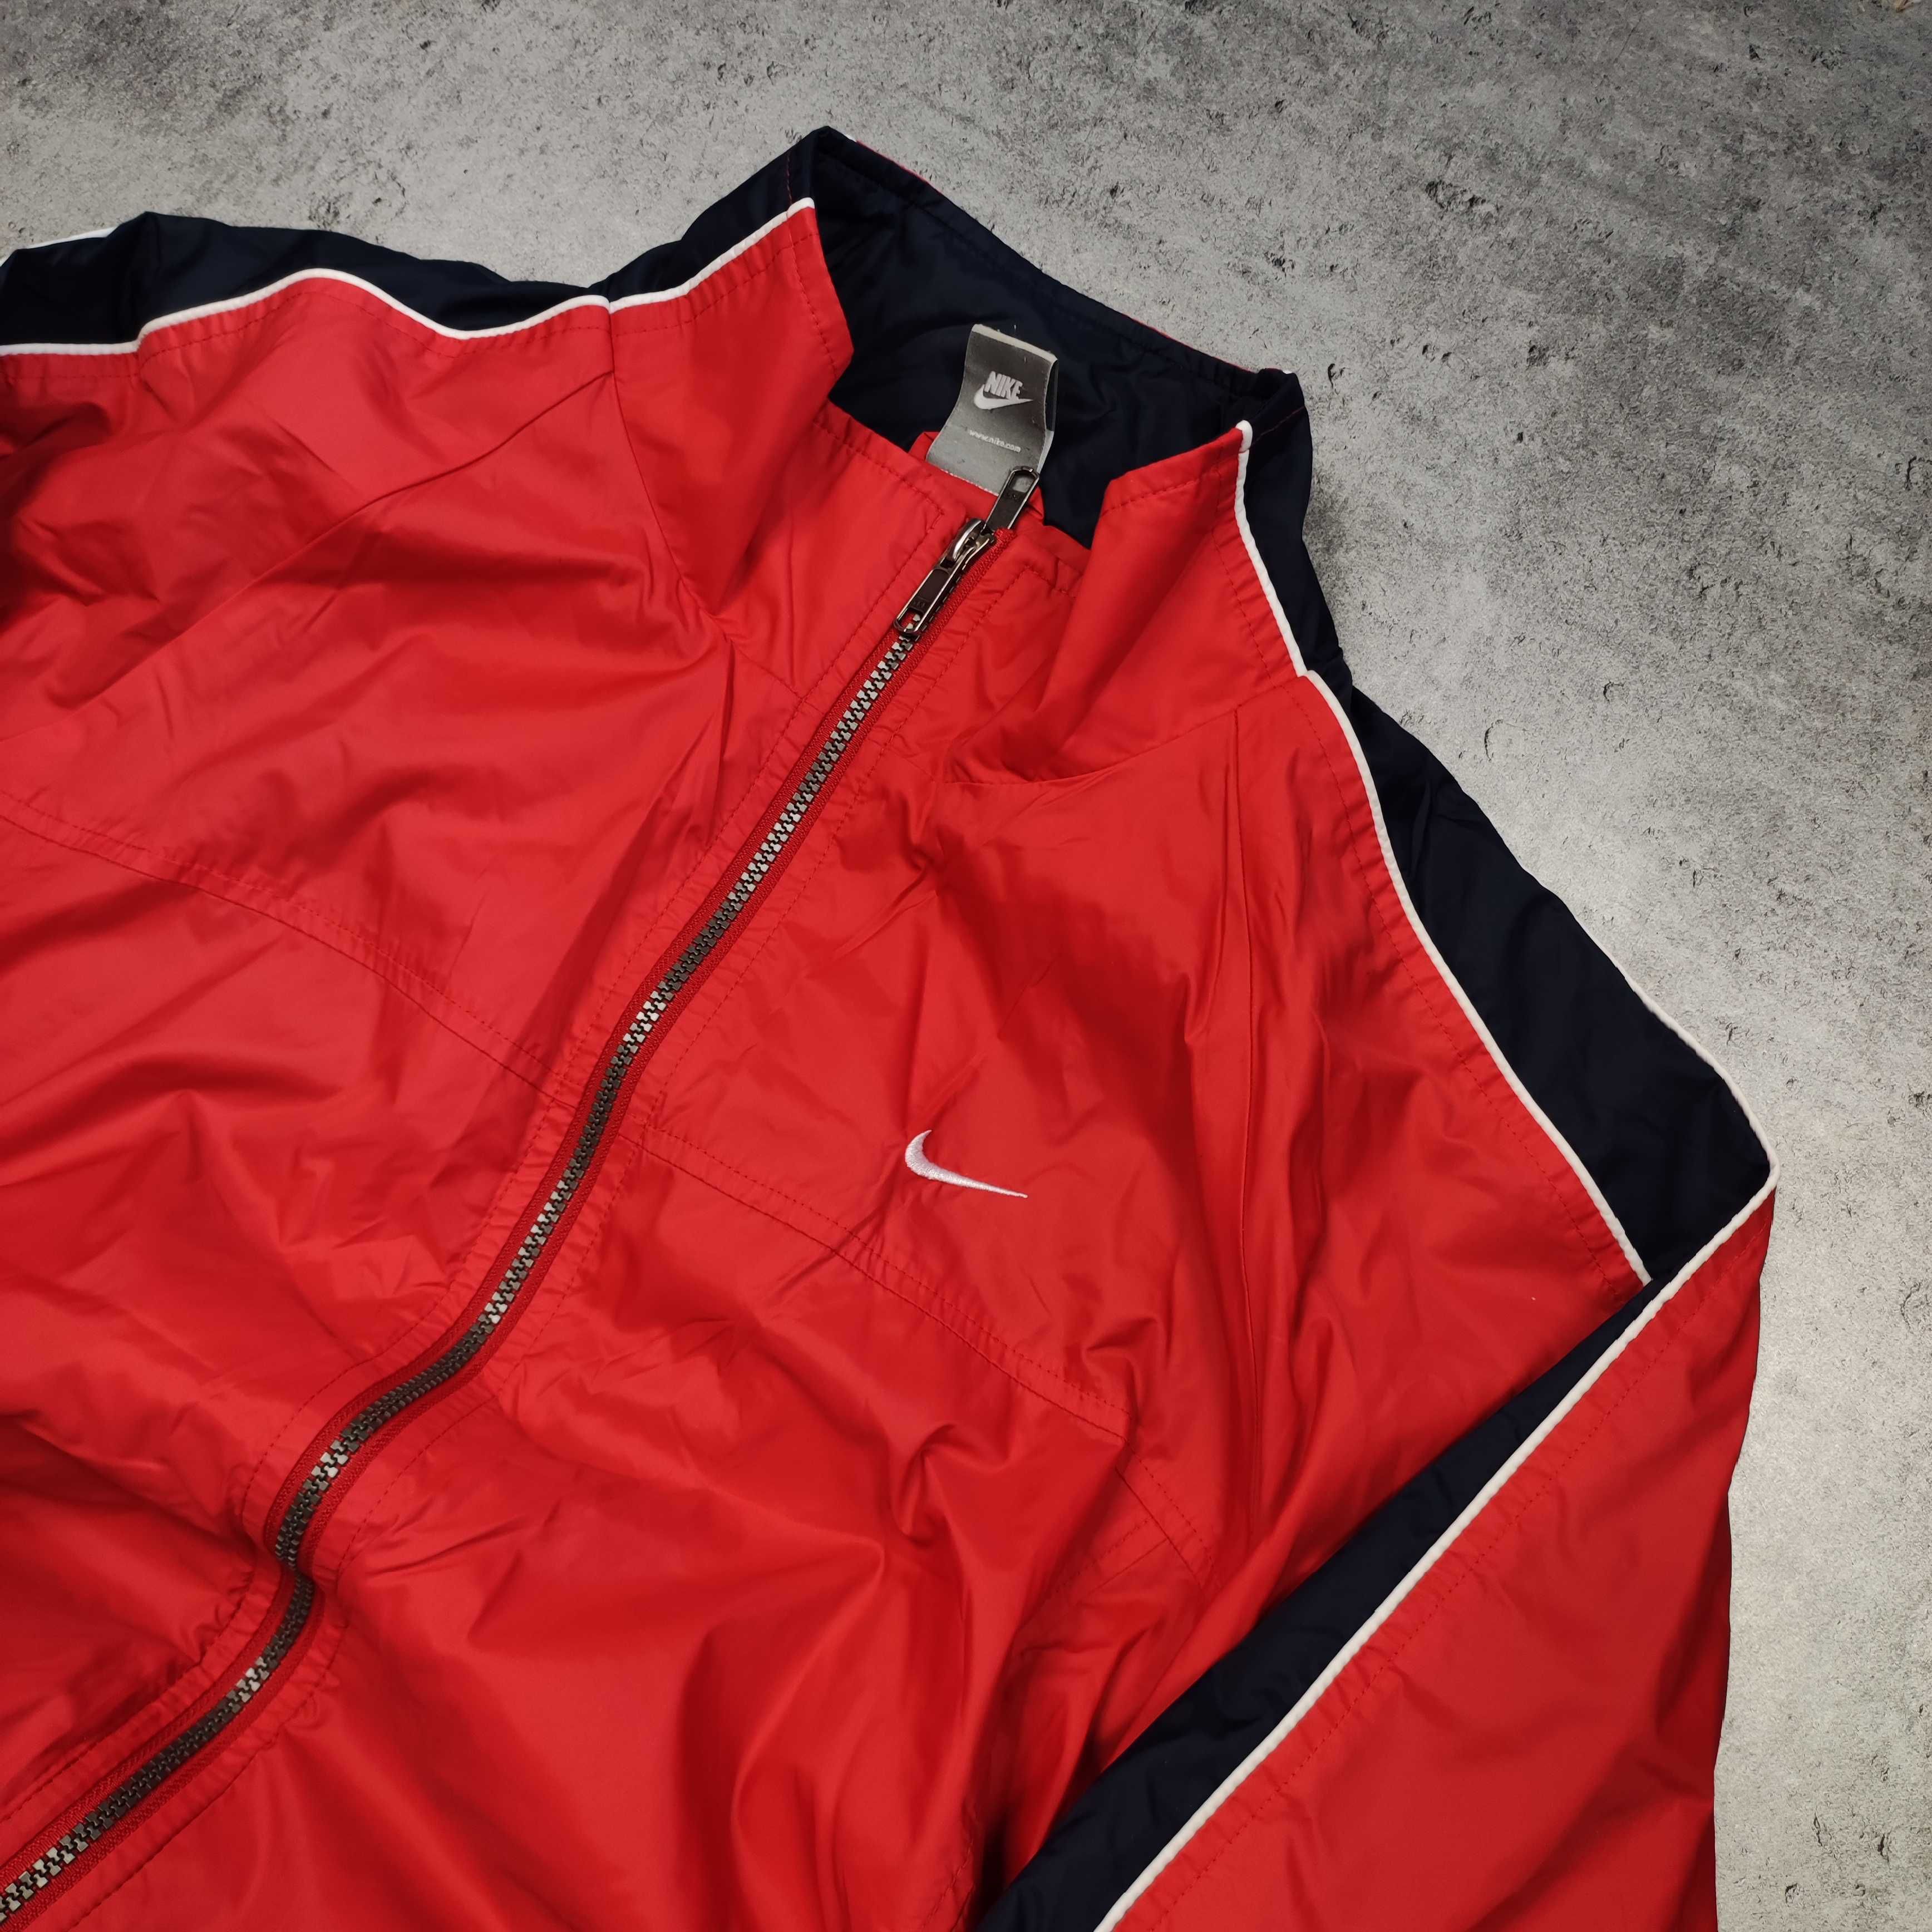 MĘSKA Kurtka Retro Vintage Nike Czerwona Lampas Rozpinana Wiatrówka